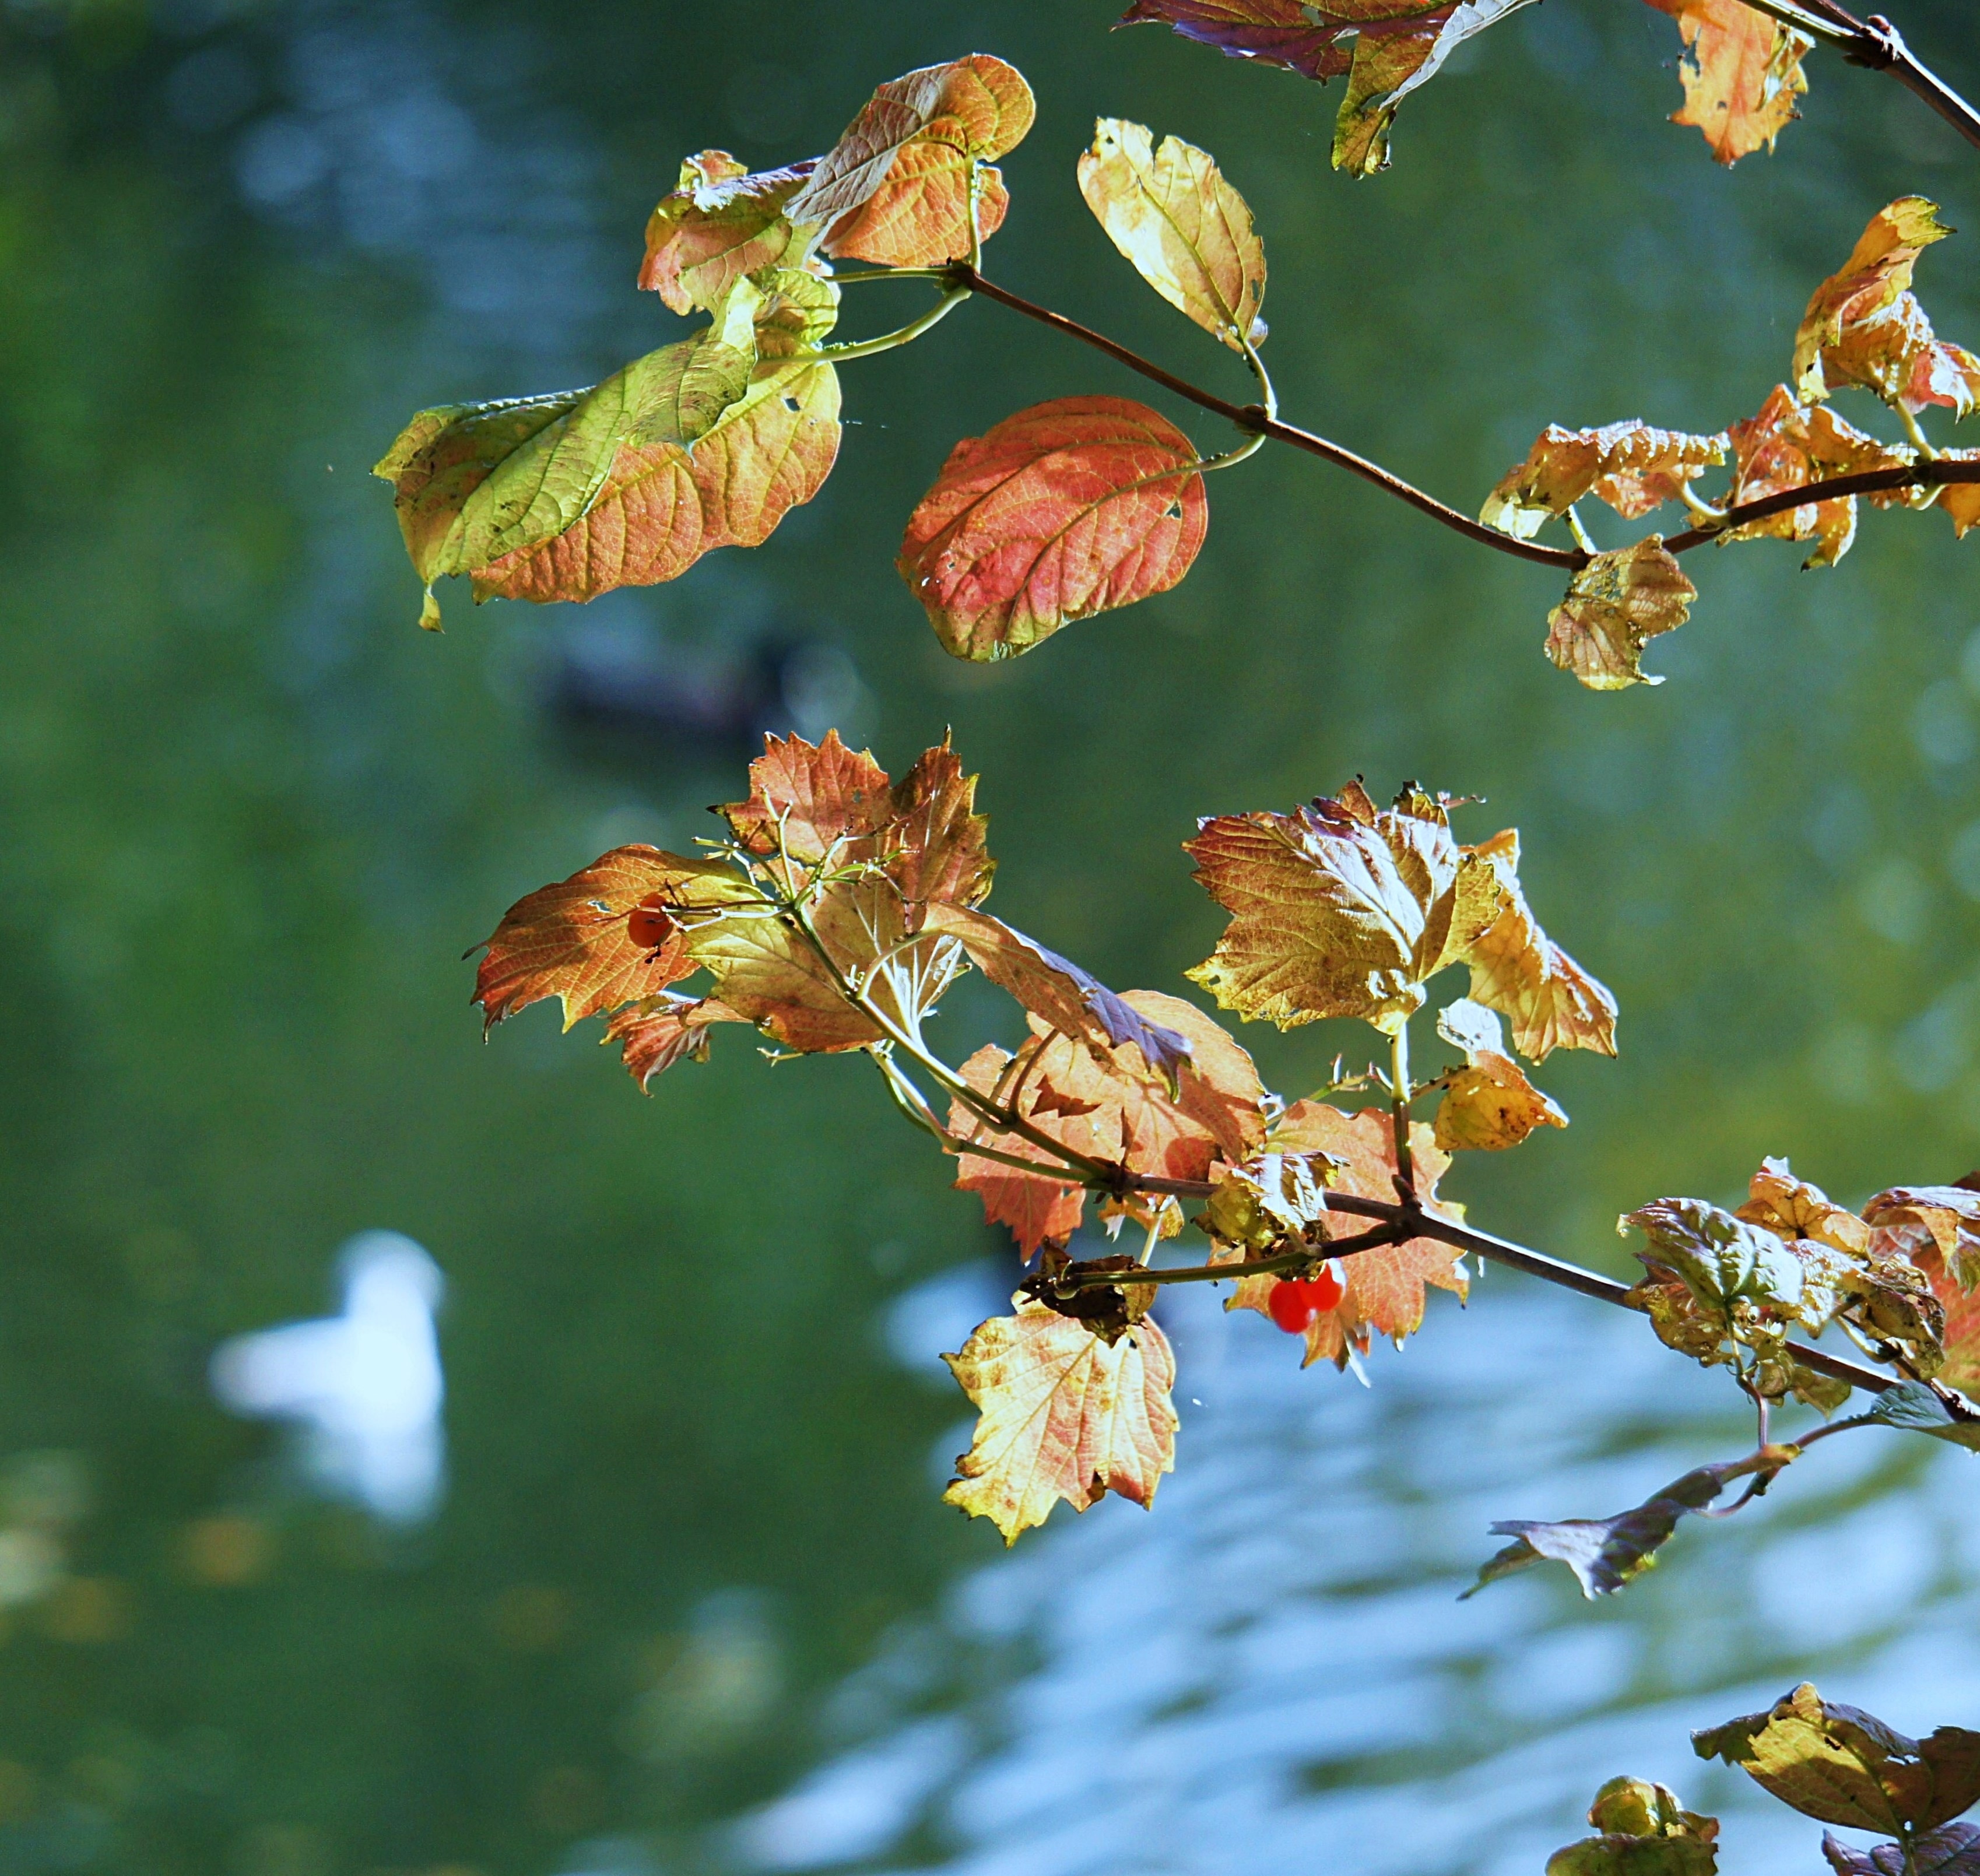 Golden Autumn, Autumn, Leaves, nature, focus on foreground